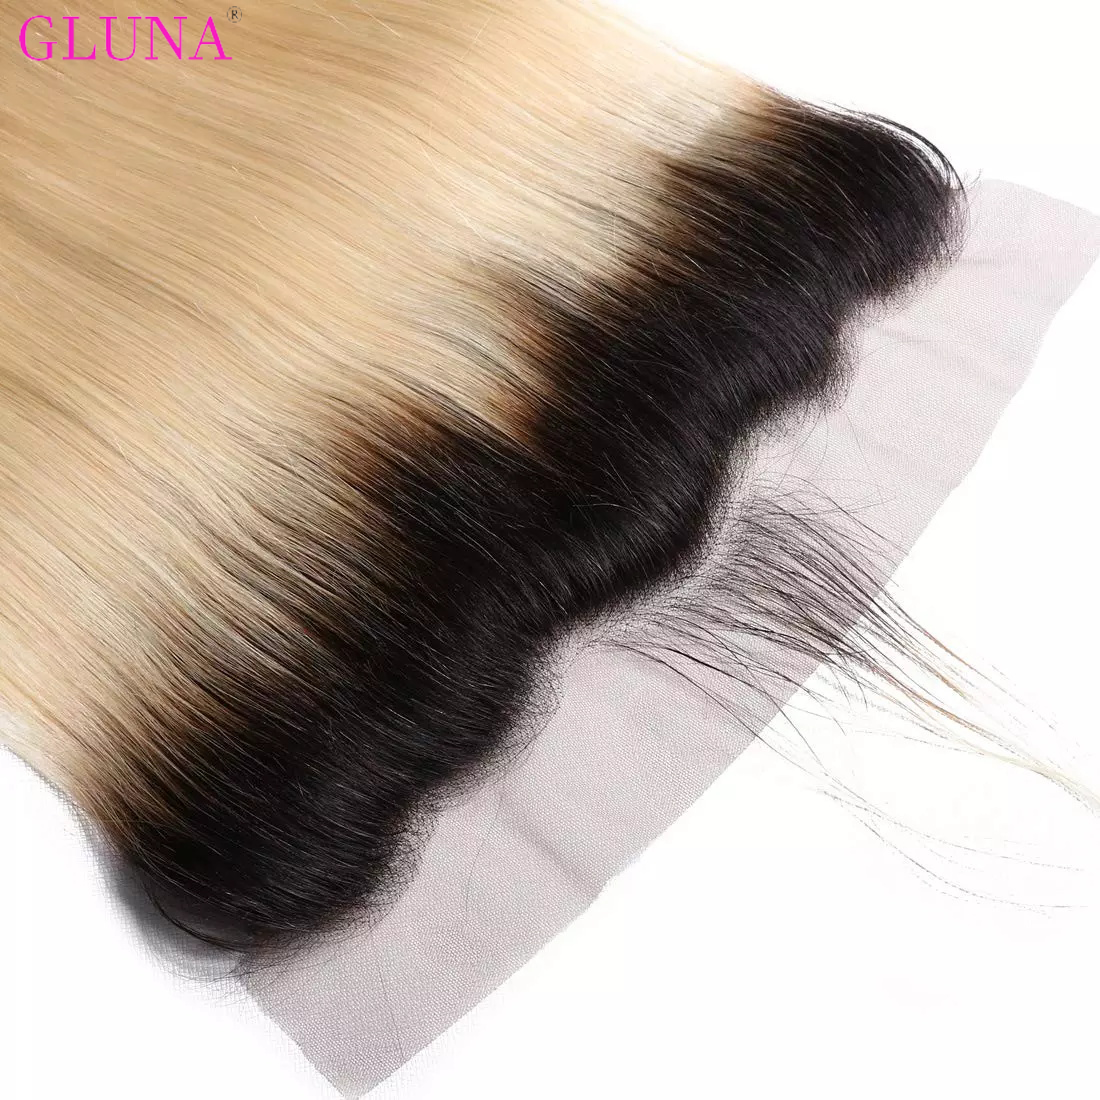 Gluna Hair 13×4 Lace Frontal Straight Hair 1B/613 Blonde Russian Virgin Hair (1B/613 color )